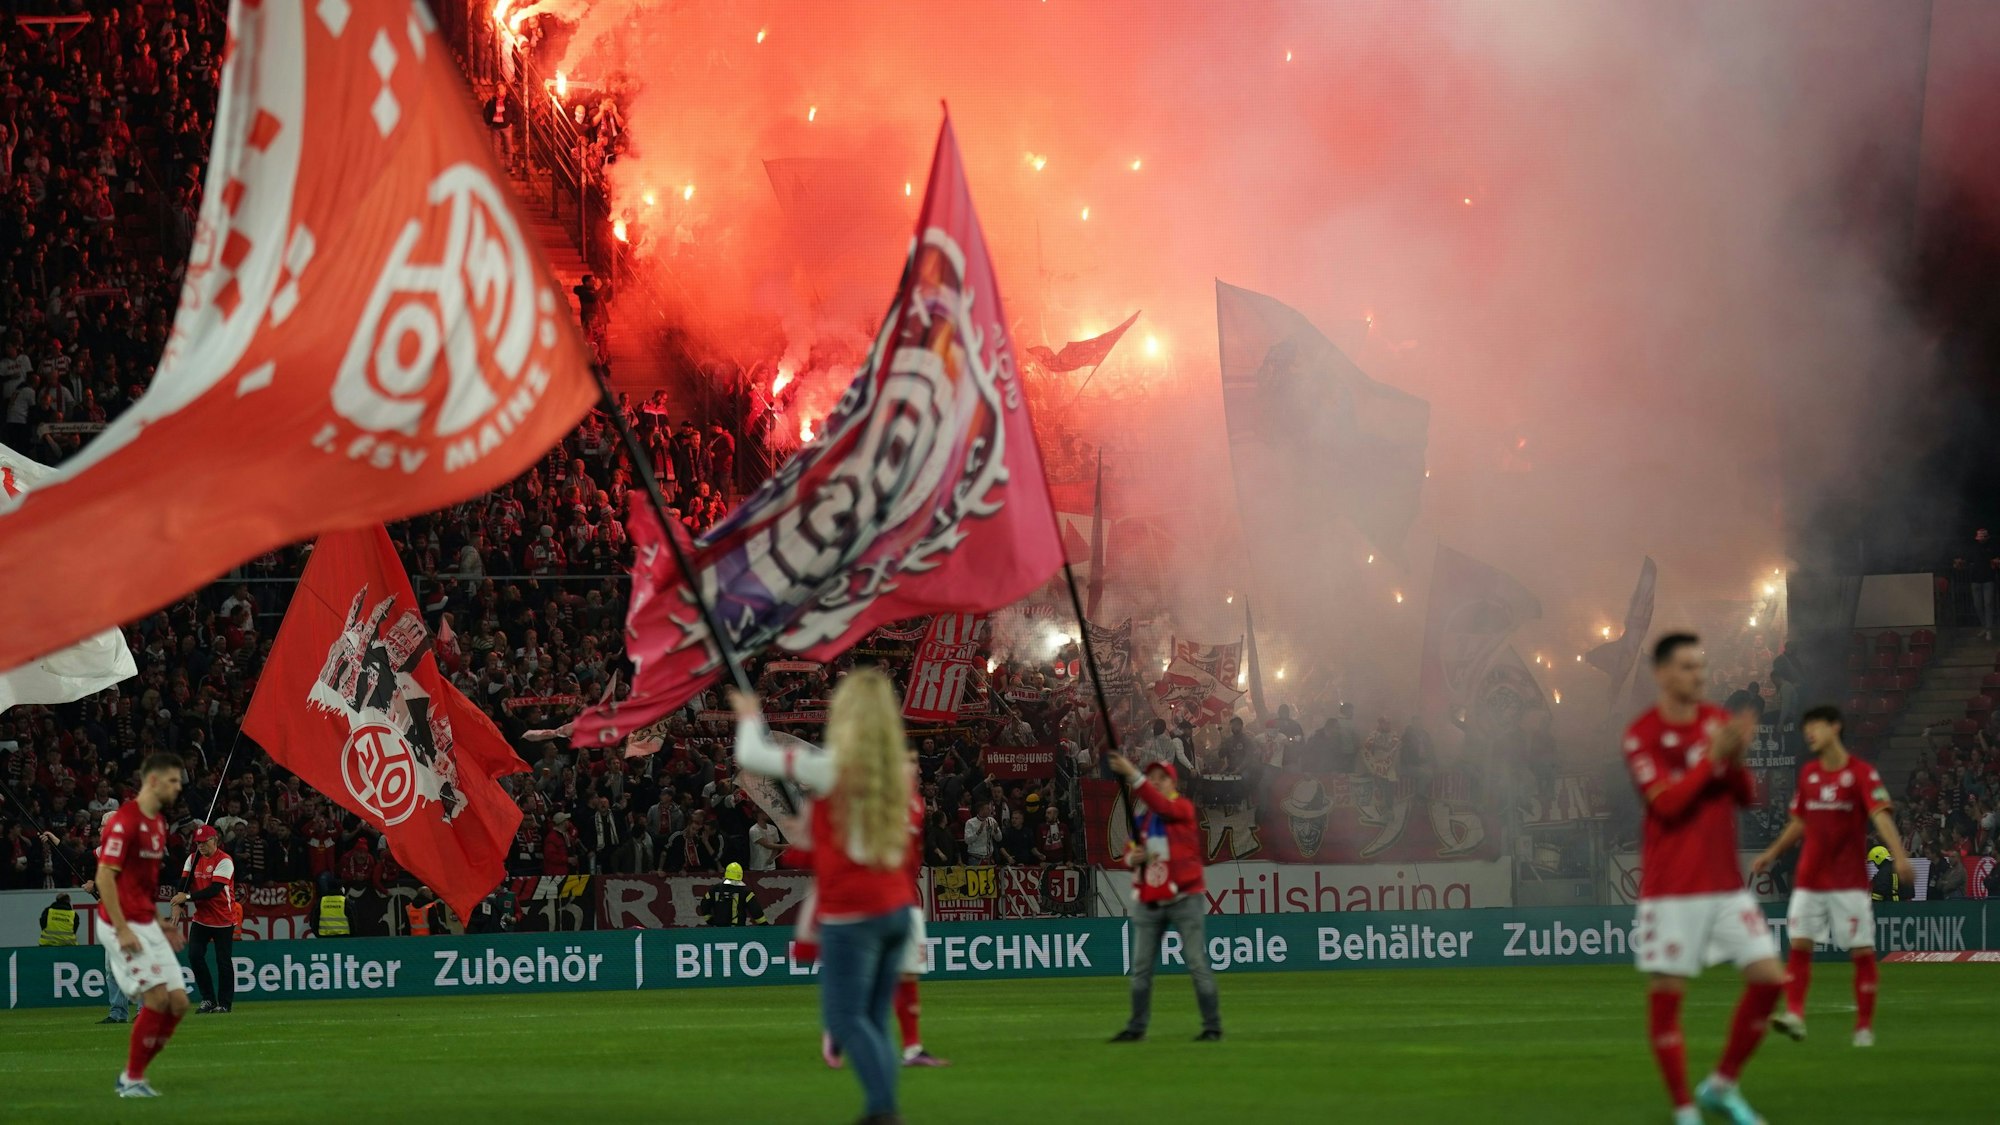 Bei Anpfiff des Bundesliga-Spiels FSV Mainz 05 gegen 1. FC Köln am Freitagabend (21. Oktober 2022) brannte der Gäste-Block lichterloh.